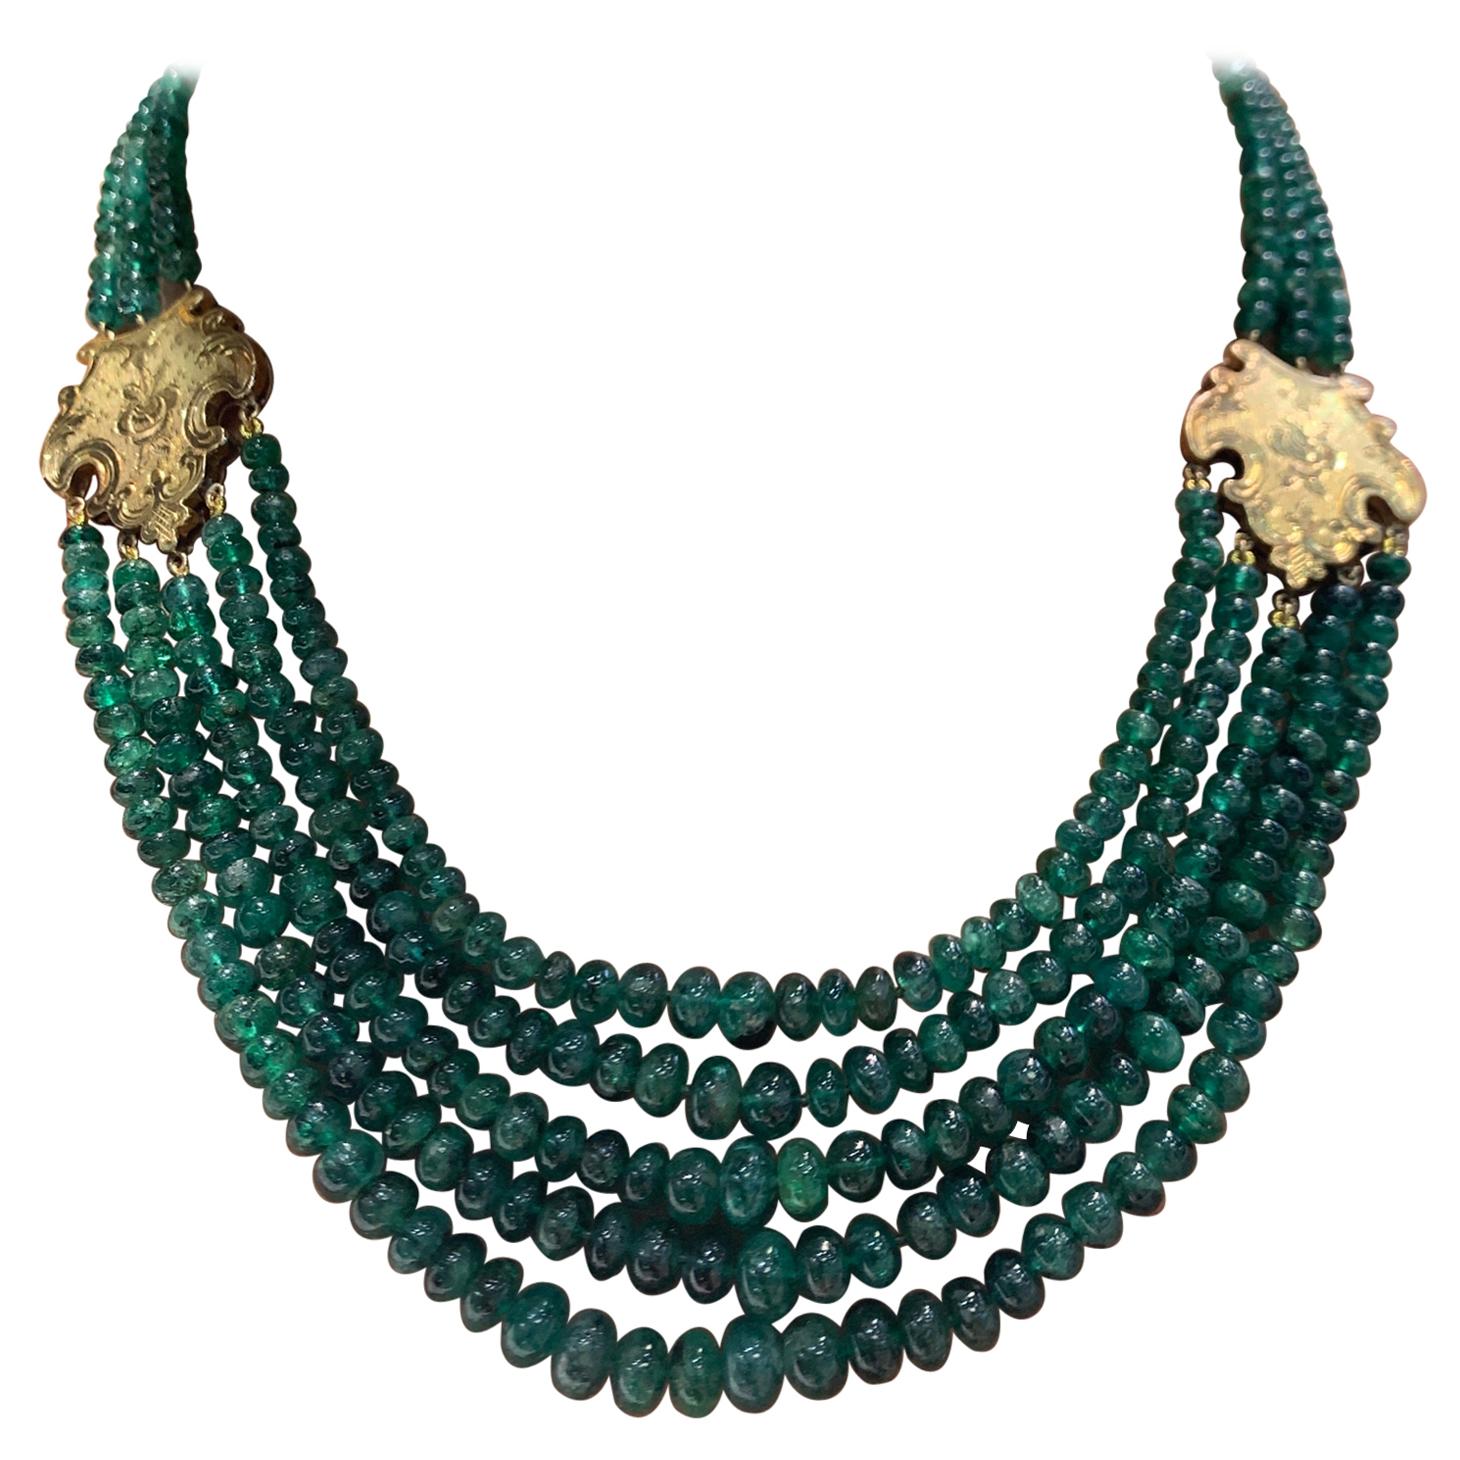 Smaragd abgestufte Perlenkette